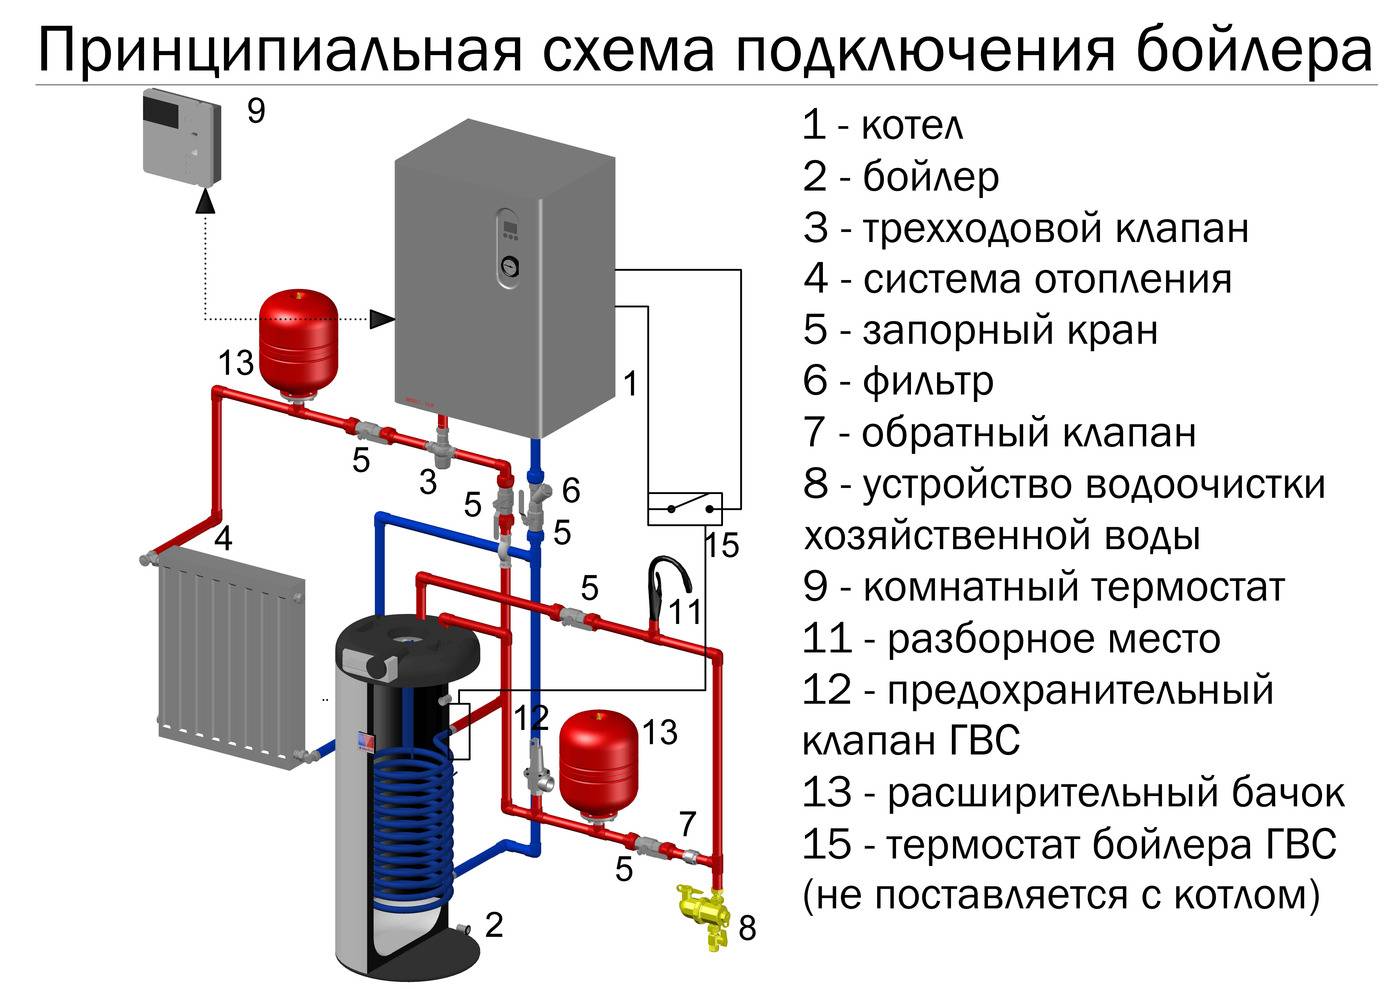 Одноконтурный и двухконтурный газовые котлы: основные отличия, устройство и принцип работы